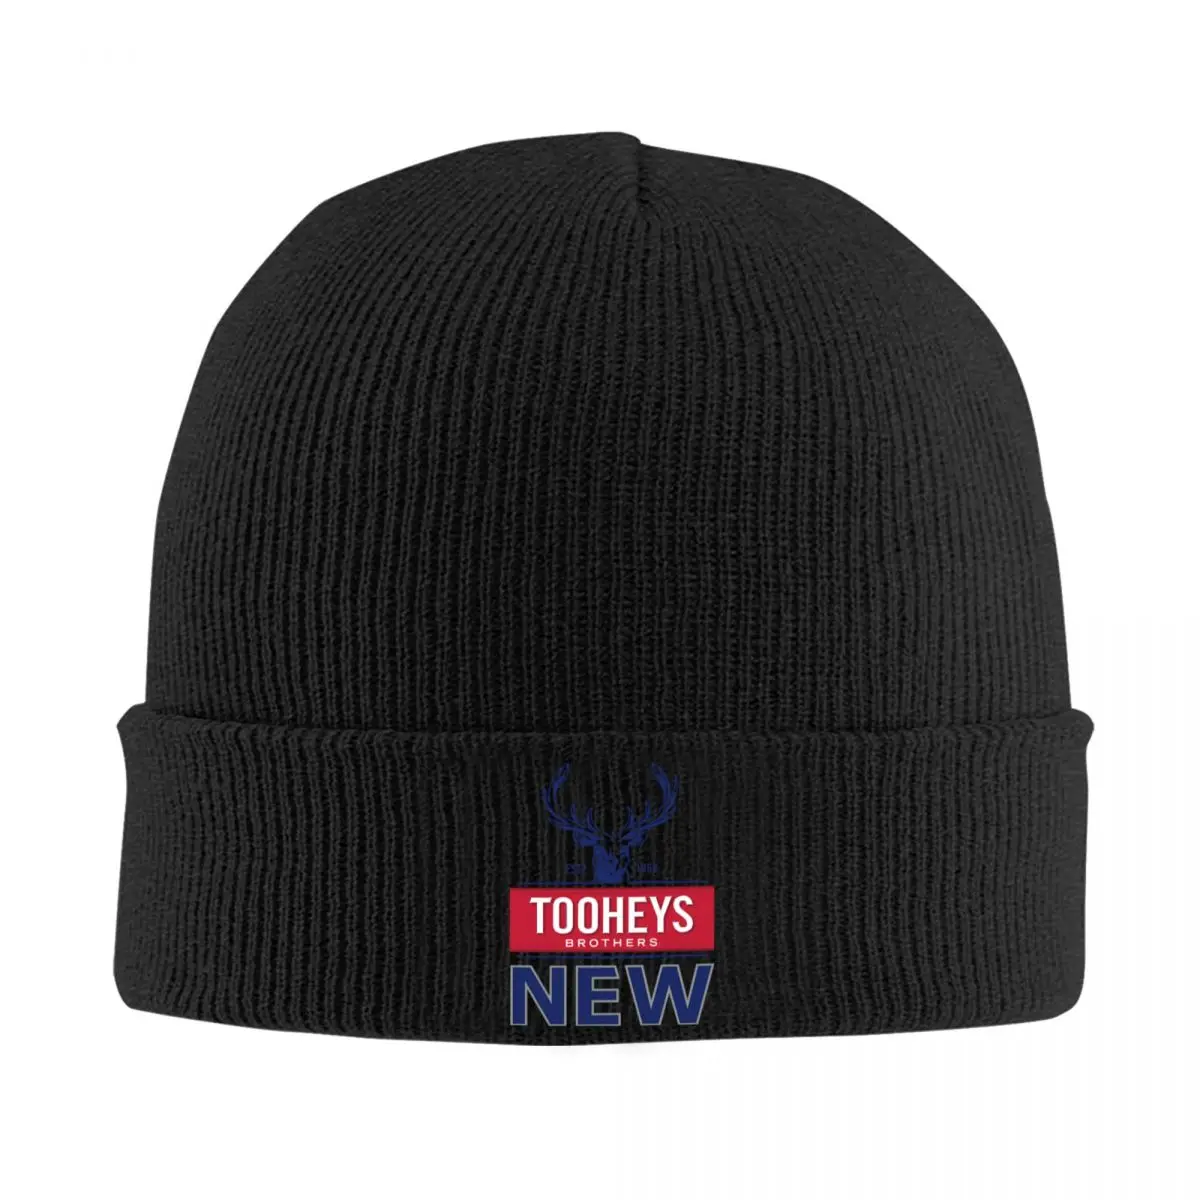 

Вязаная шапка Tooheys с новым логотипом